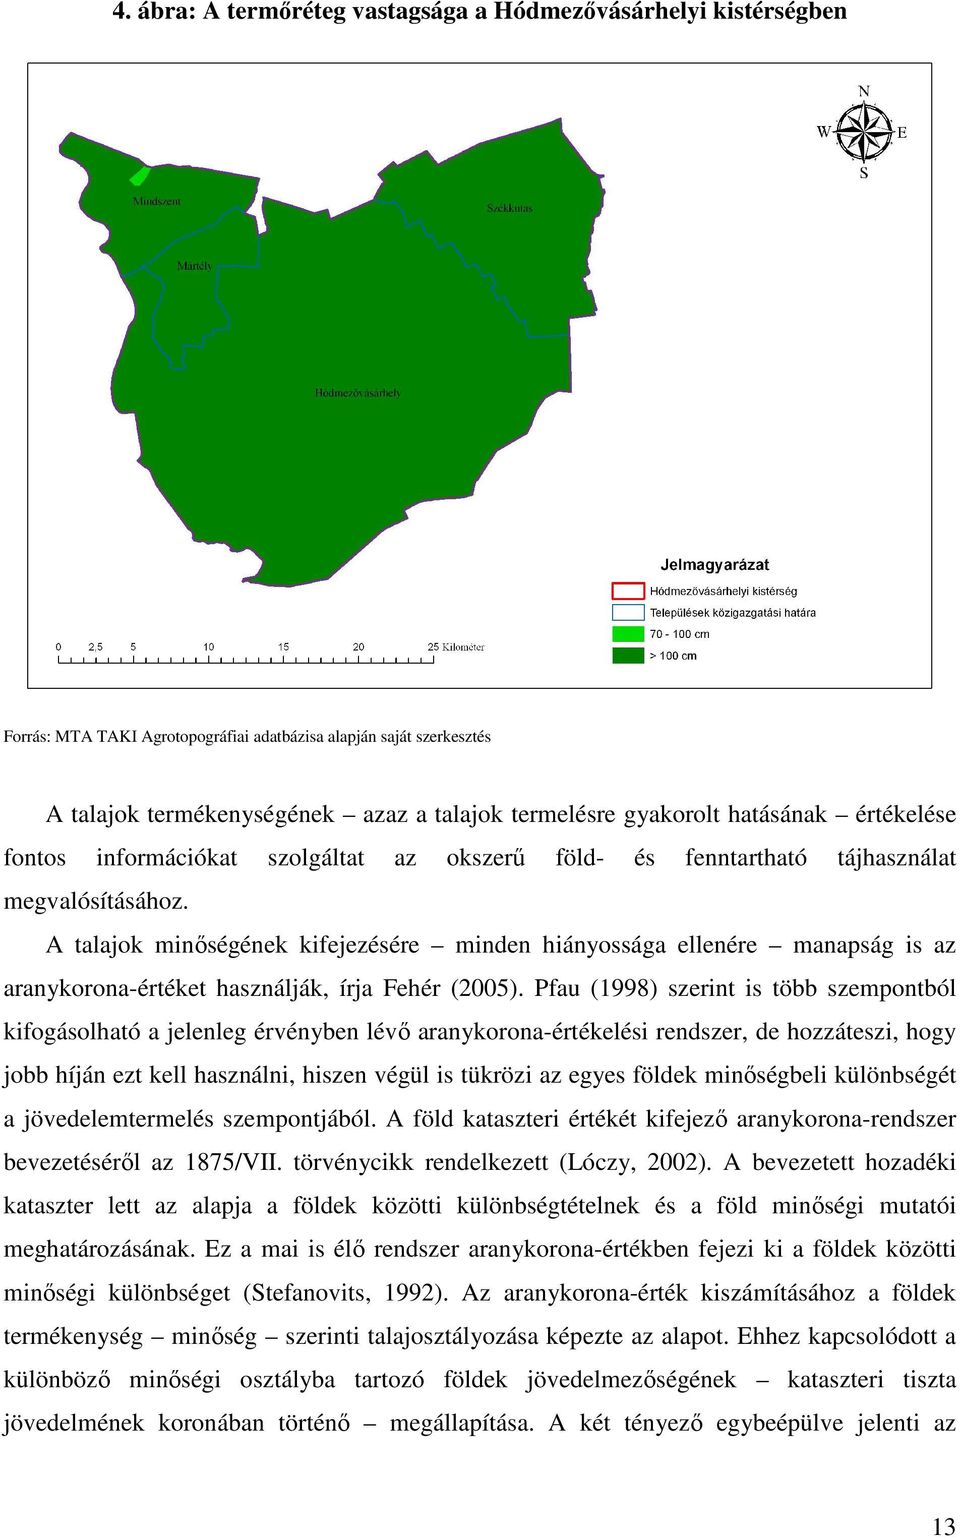 A talajok minıségének kifejezésére minden hiányossága ellenére manapság is az aranykorona-értéket használják, írja Fehér (2005).